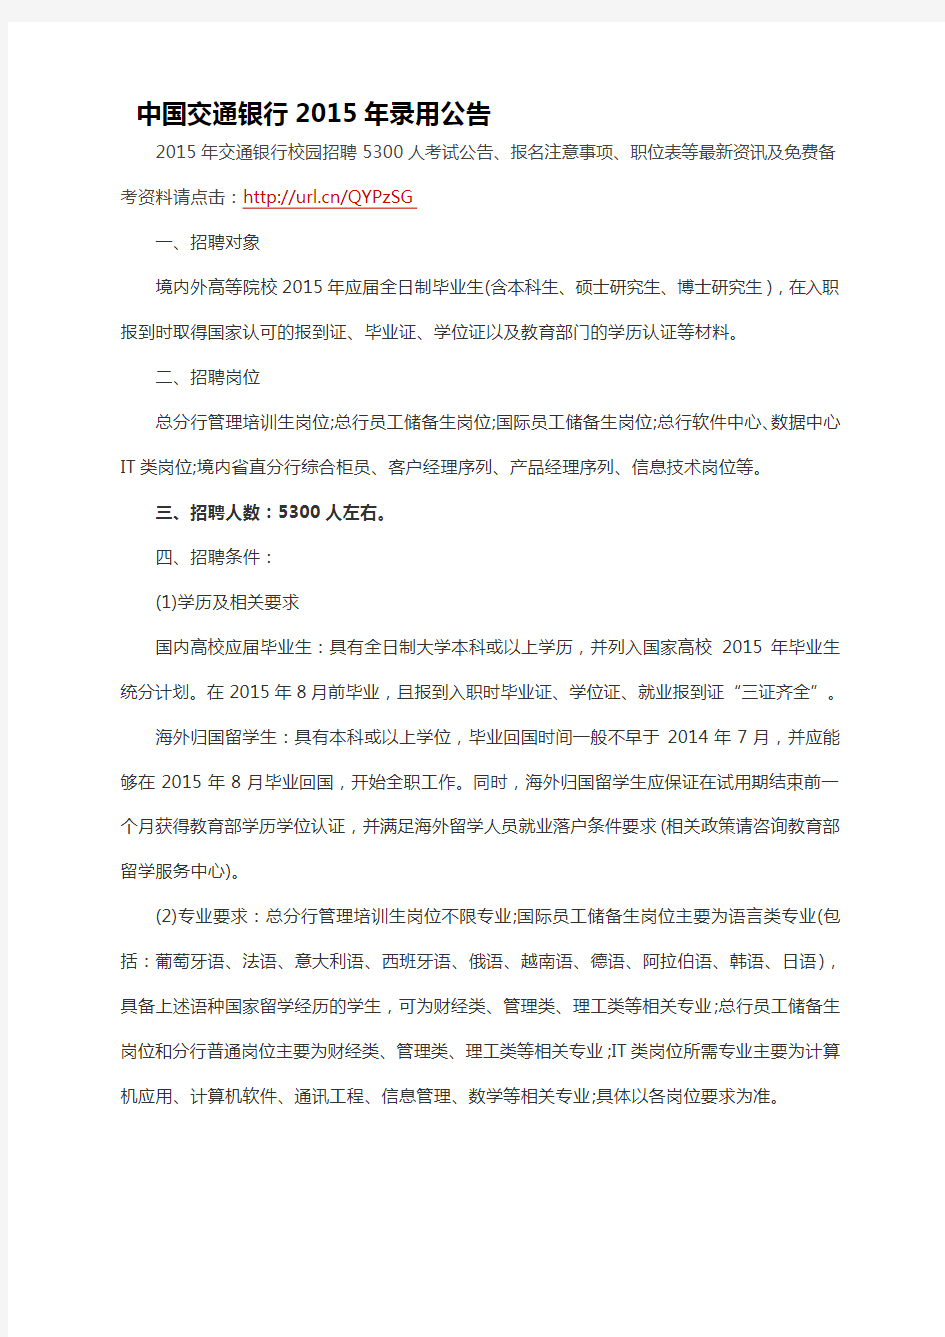 中国交通银行2015年录用公告